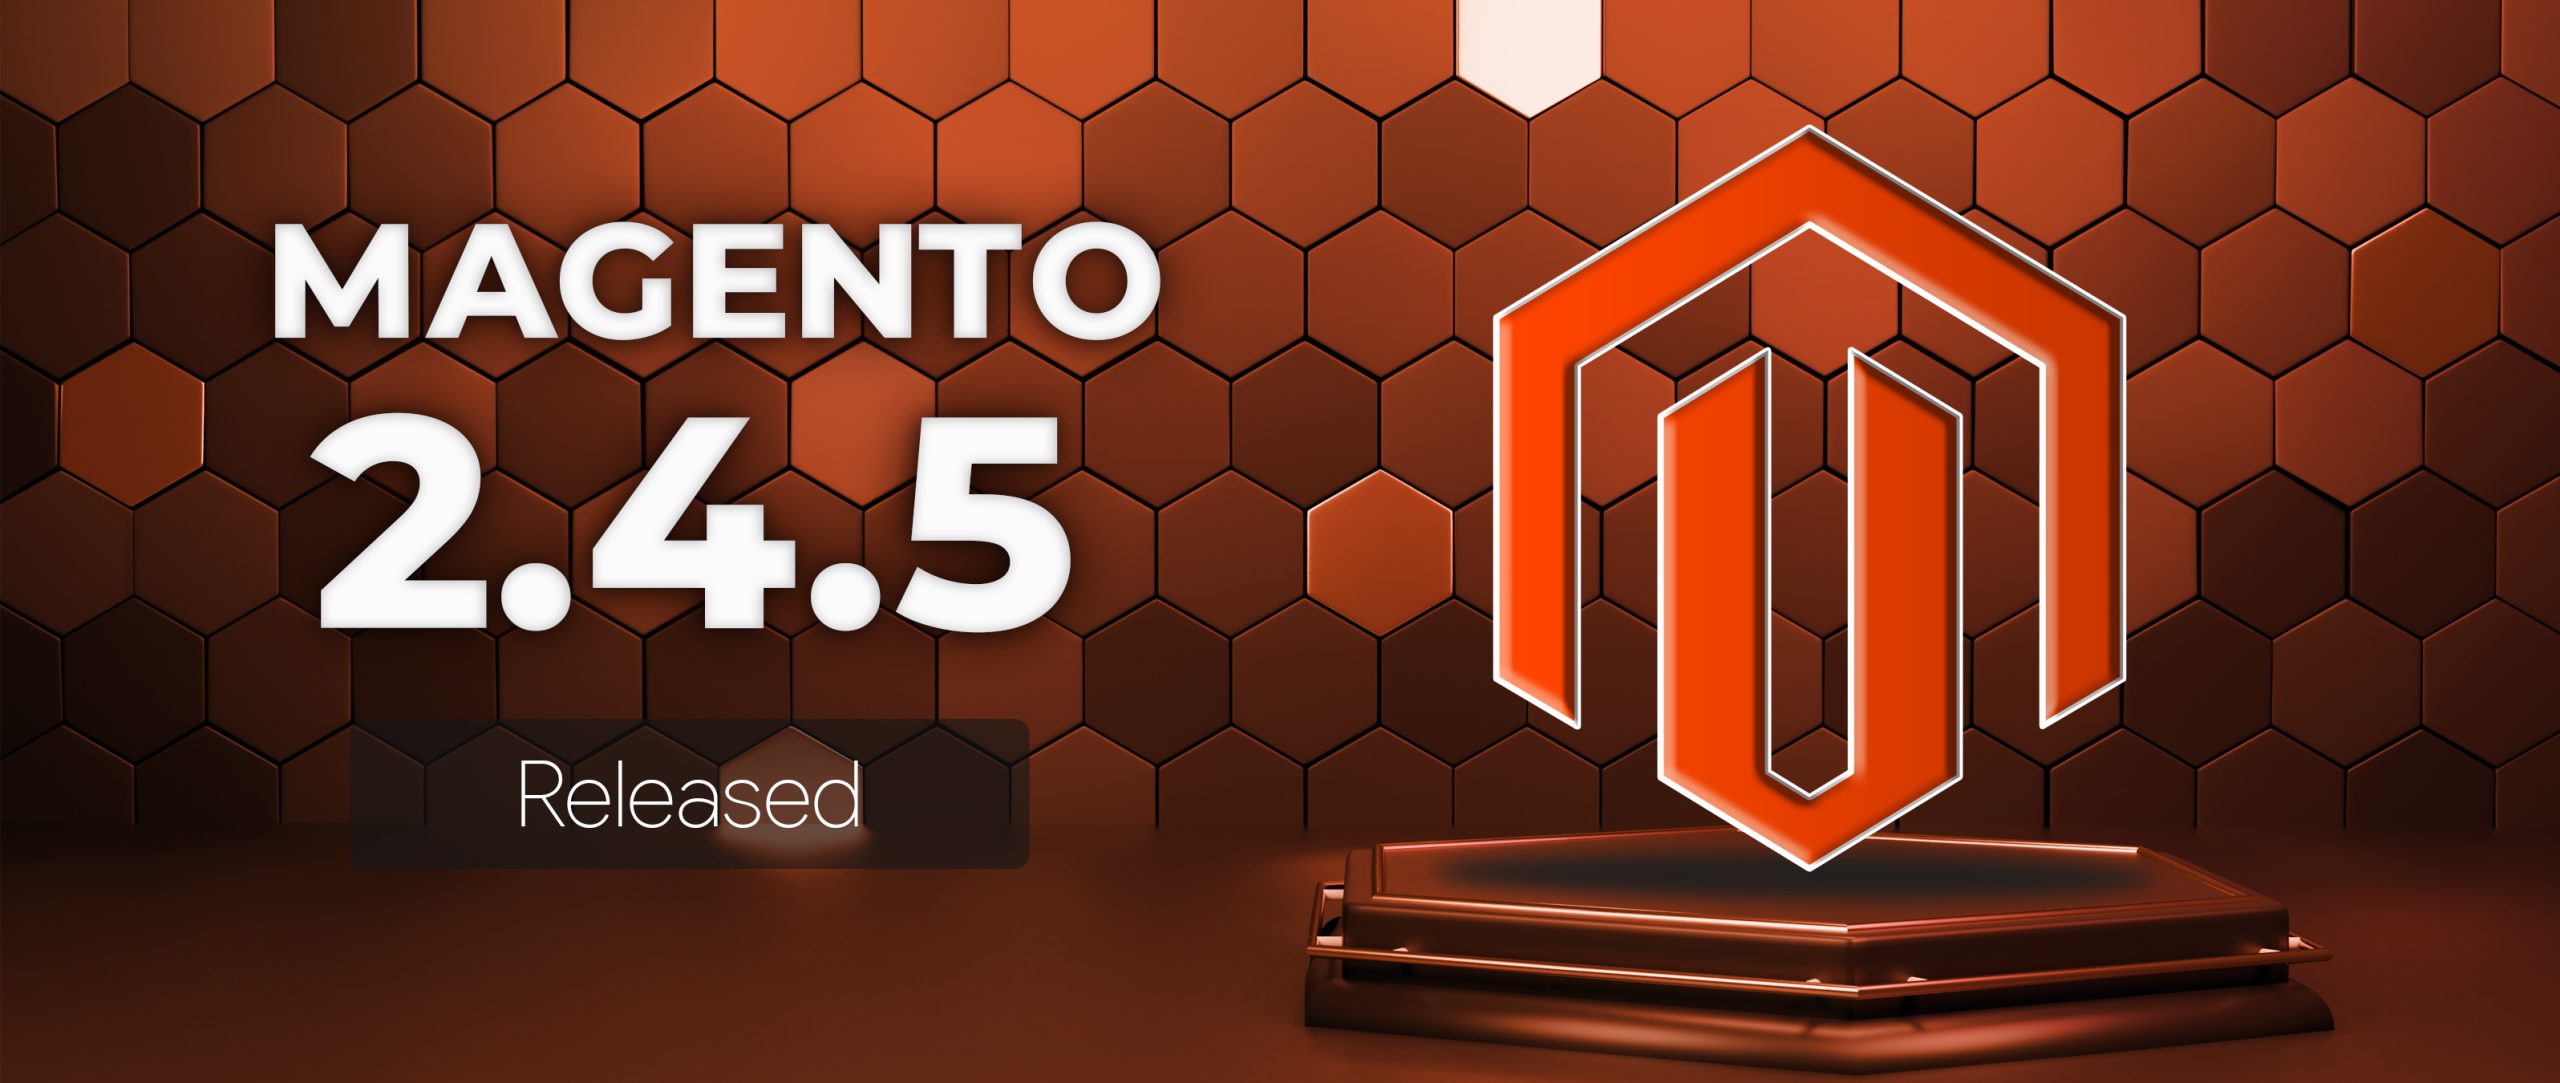 Magento 2.4.5 release